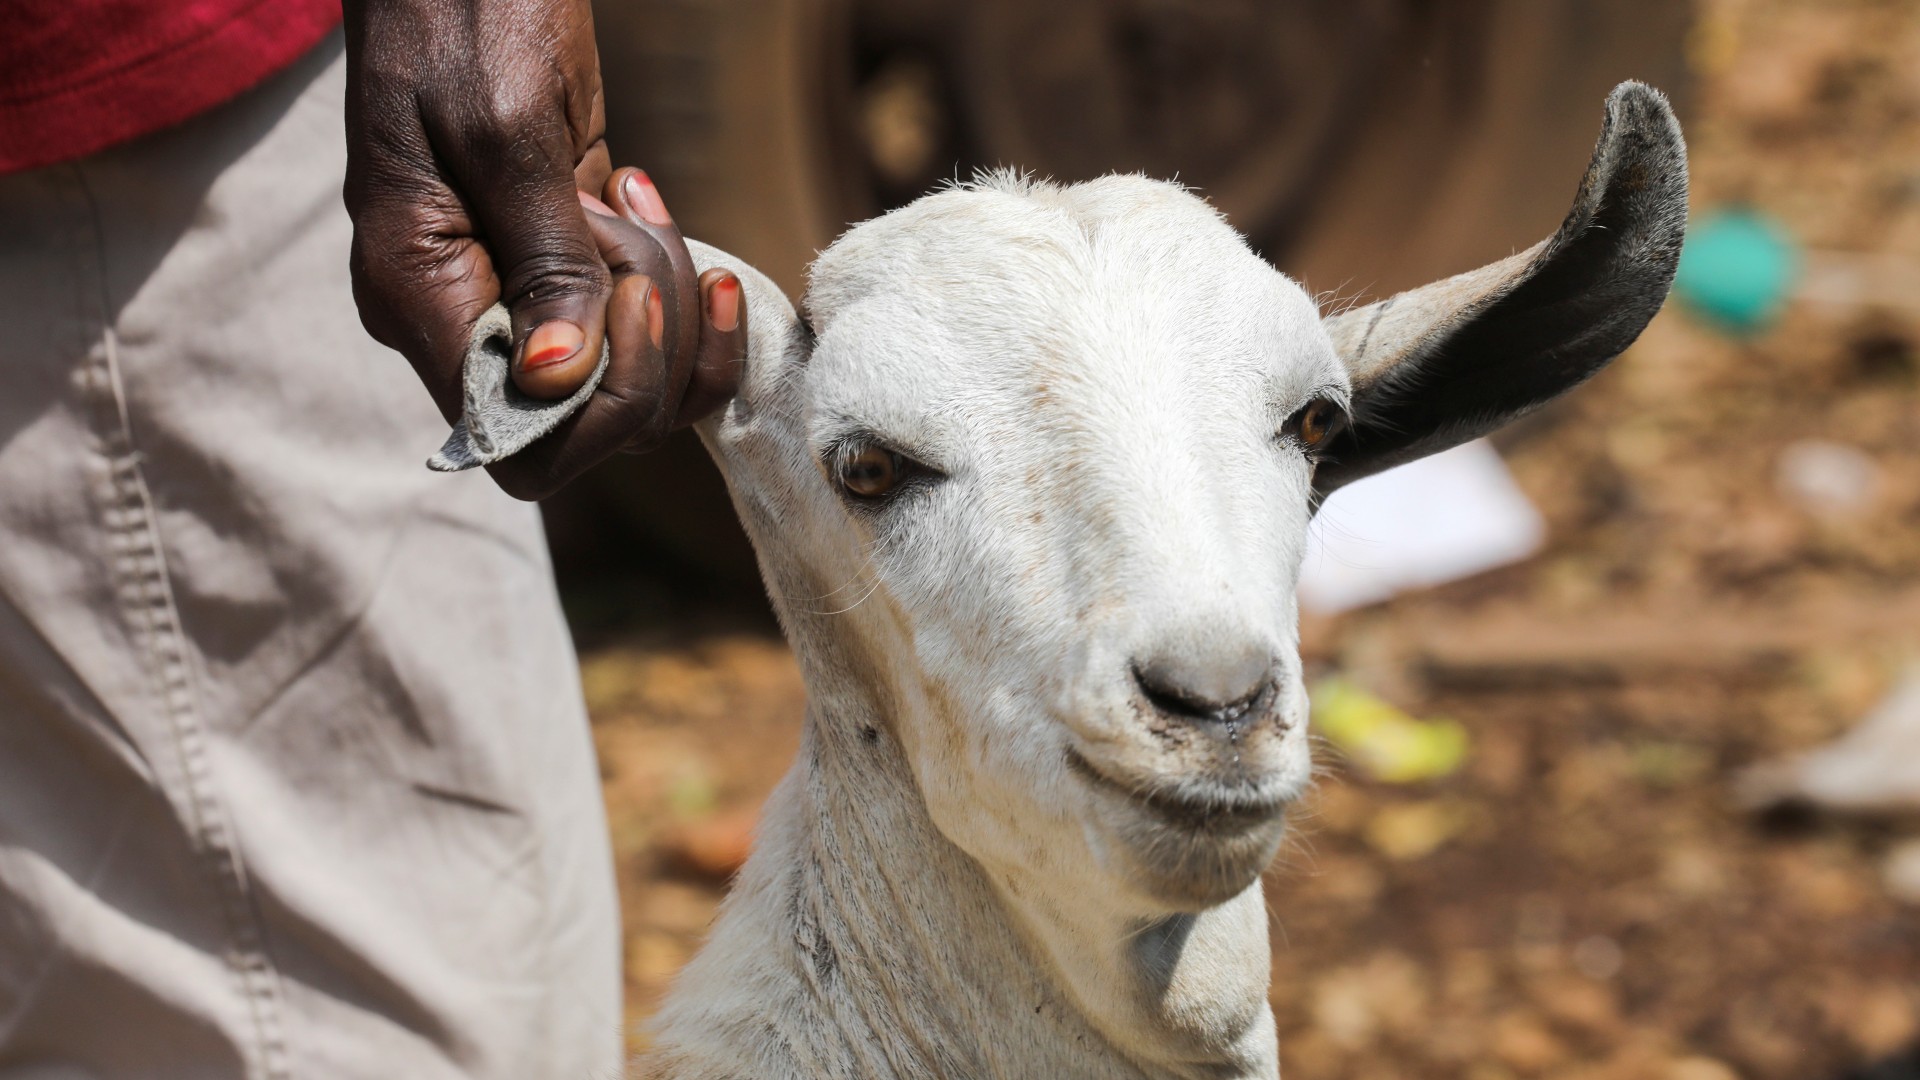 kenya qurbani livestock eid adha